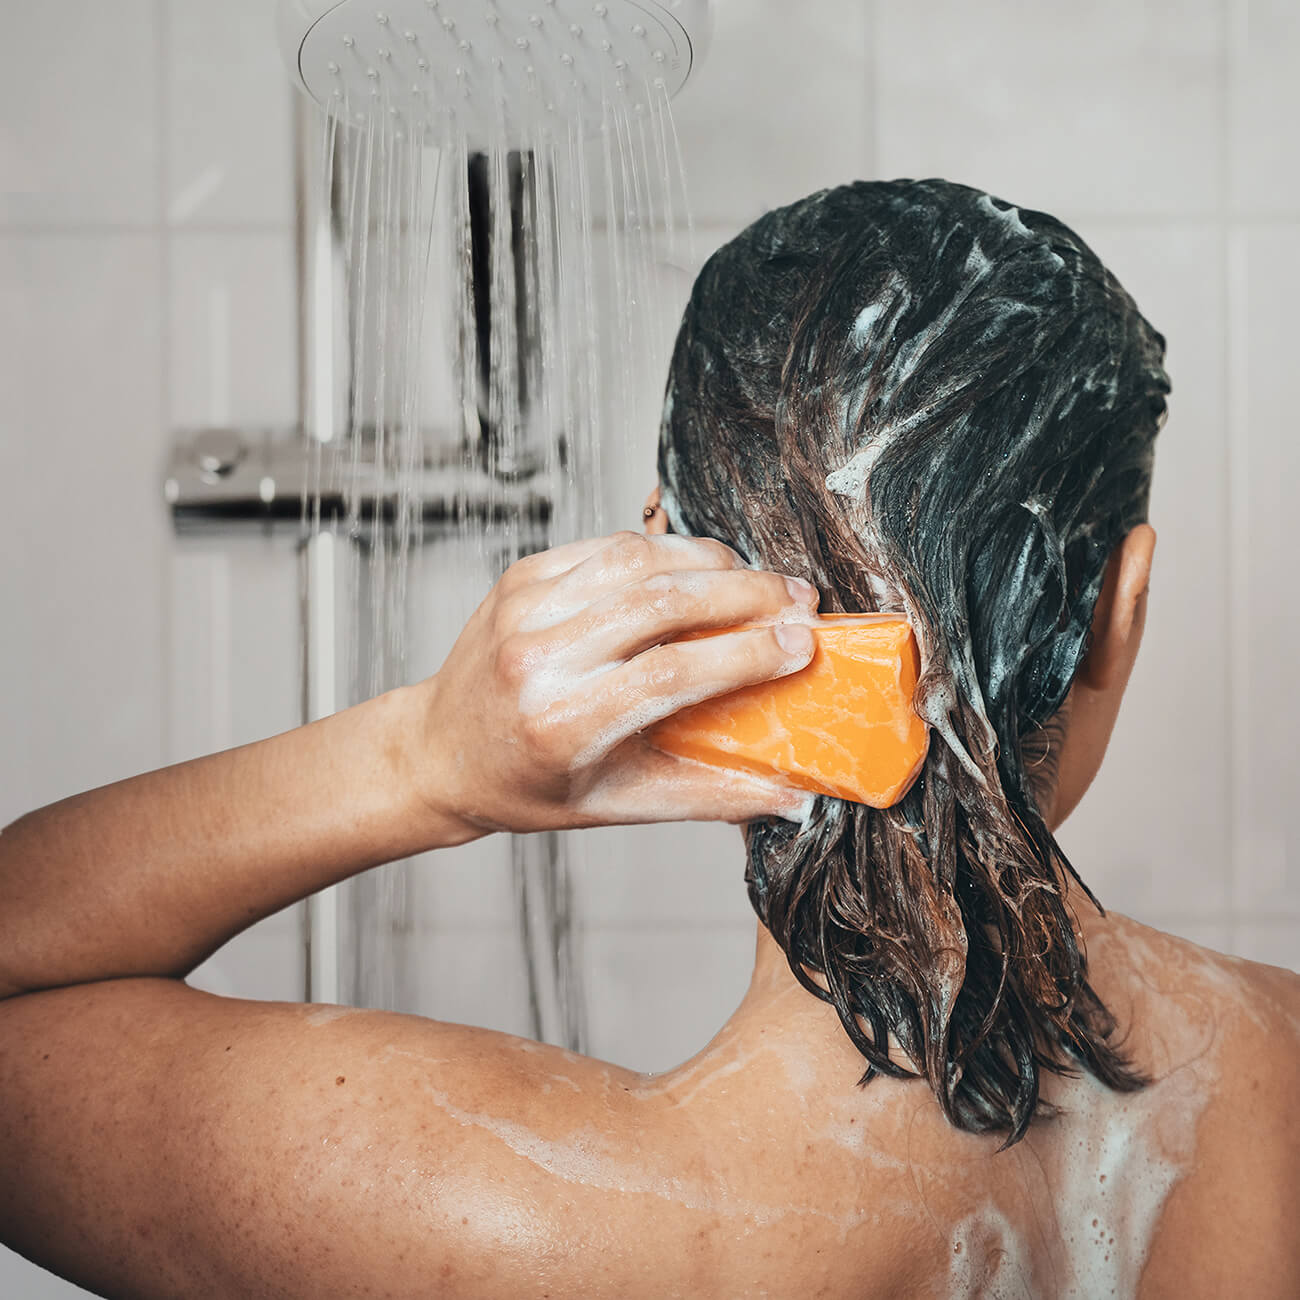 duschbrocken-festes-duschgel-und-shampoo-zwei-in-eins-nachhaltig-anwendung-frida-fruechtchen